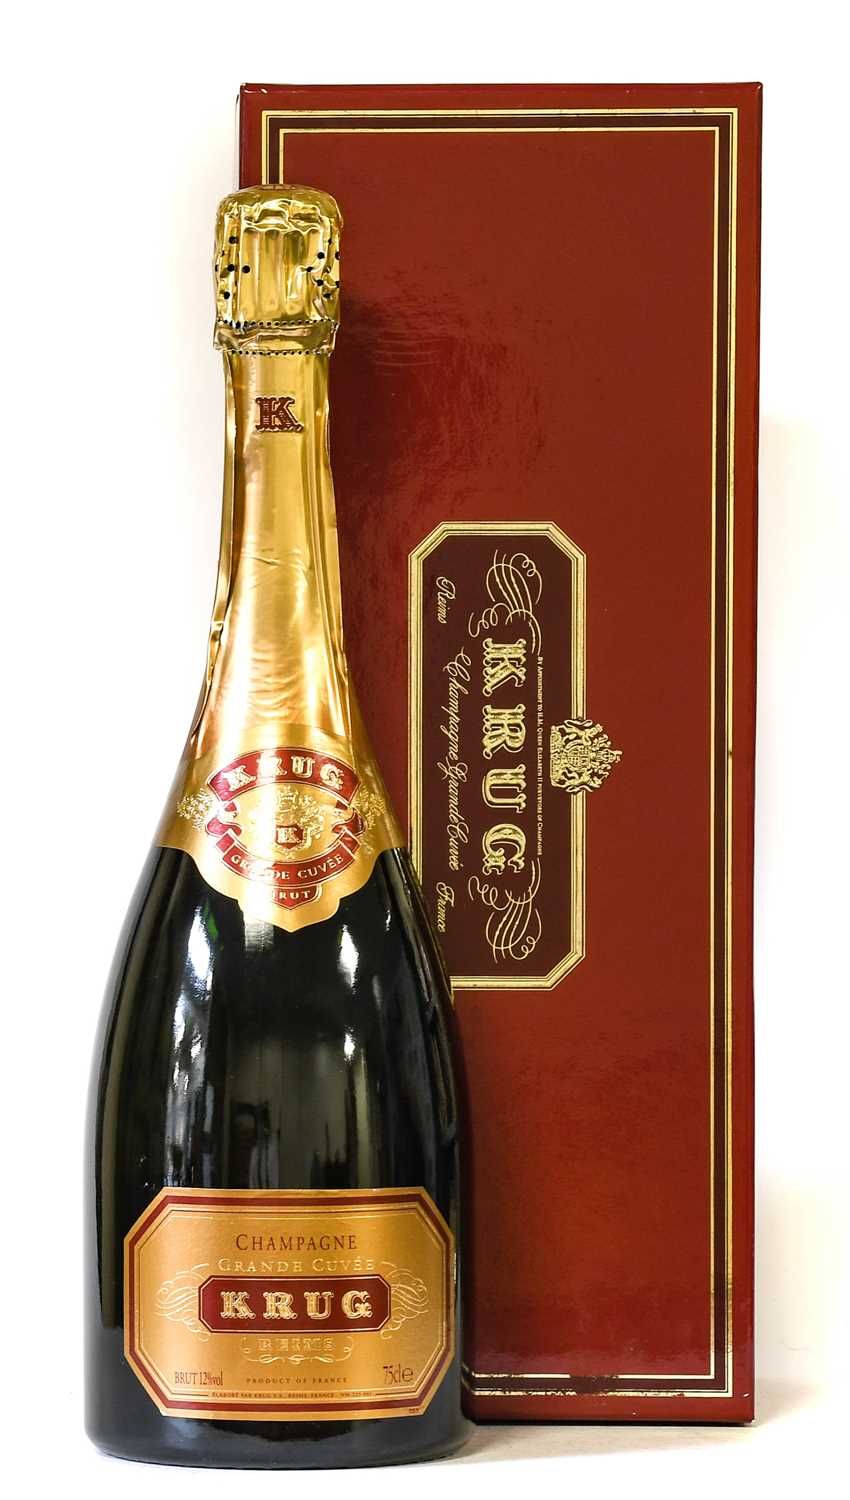 Lot 3017 - Krug Grande Cuvée Champagne (one bottle)